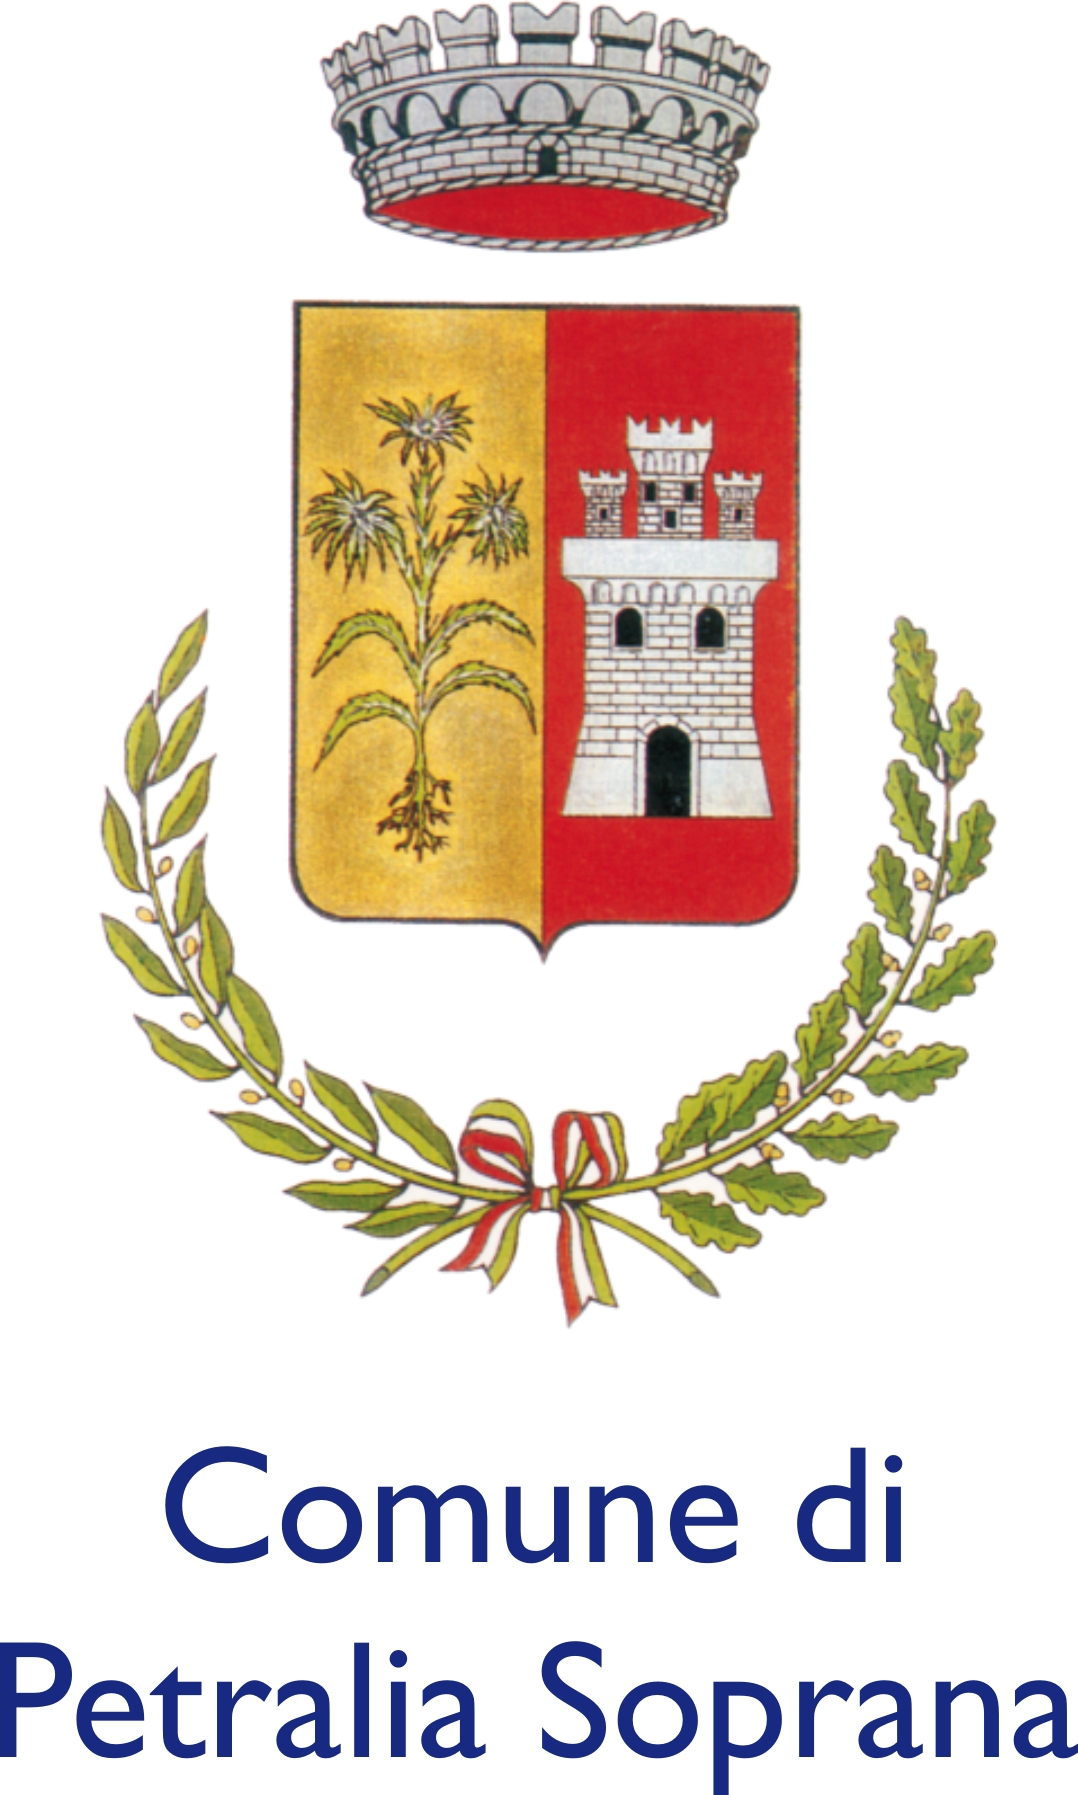 Petralia Soprana Municipality